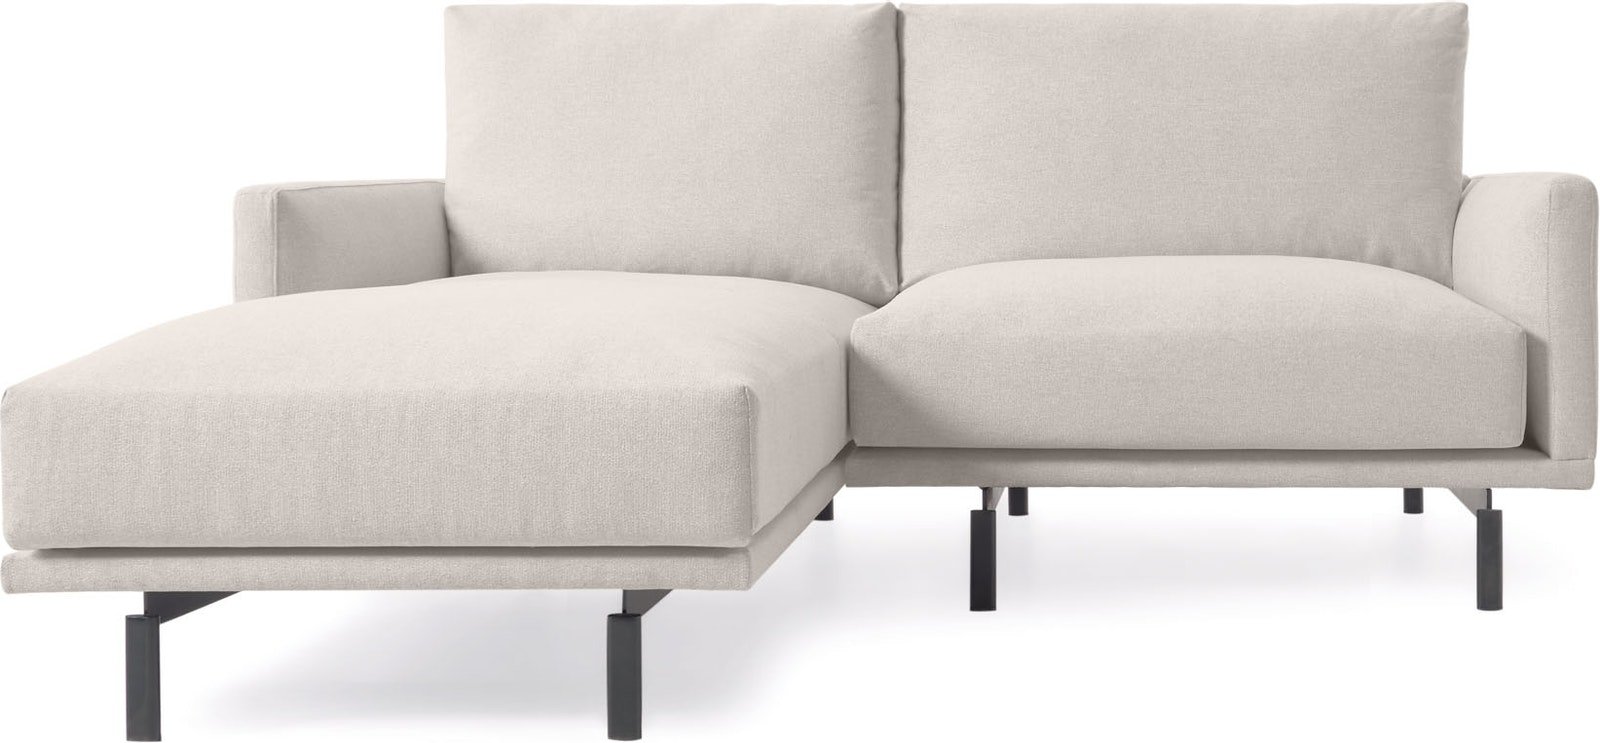 Køb 2-personers sofa, Venstre chaiselong, nordisk, polstret fra LaForma